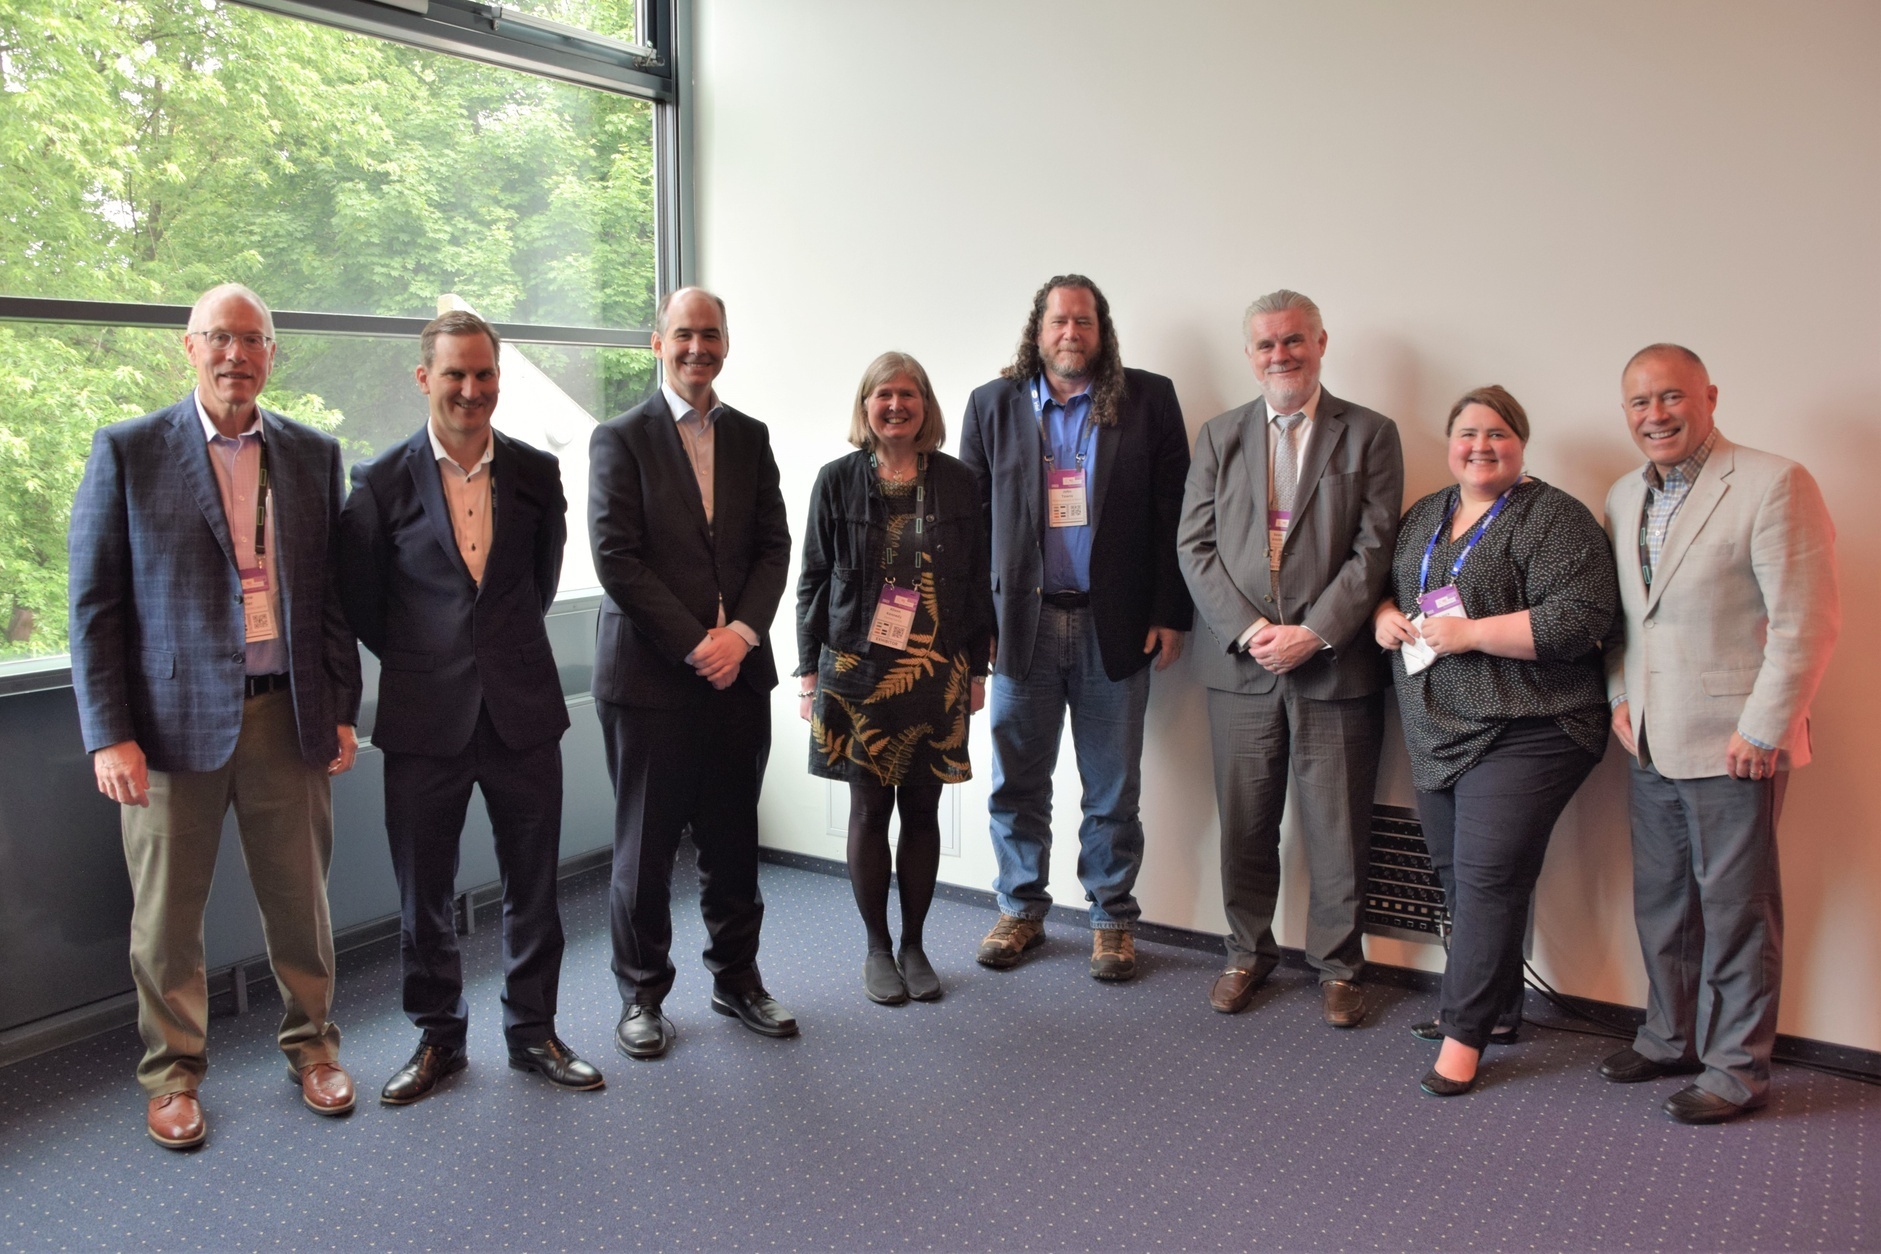 Representatives from international supercomputing centers at the inaugural International Association for Supercomputing Centers session at ISC22.